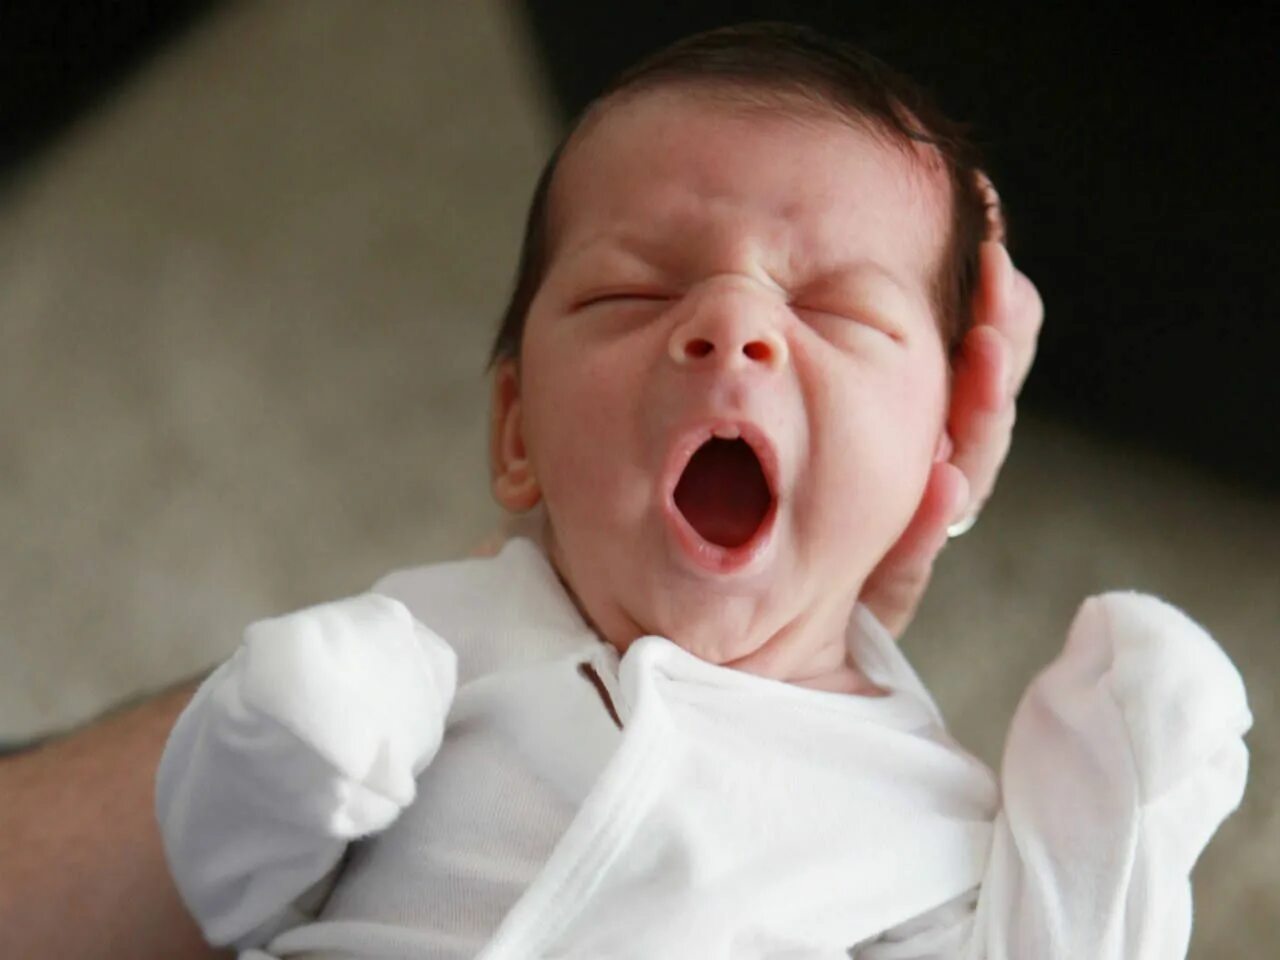 My new baby. Младенец с открытым ртом. Новорожденный ребенок с открытым ртом. Беспокойный малыш. Ребенок беспокоен.